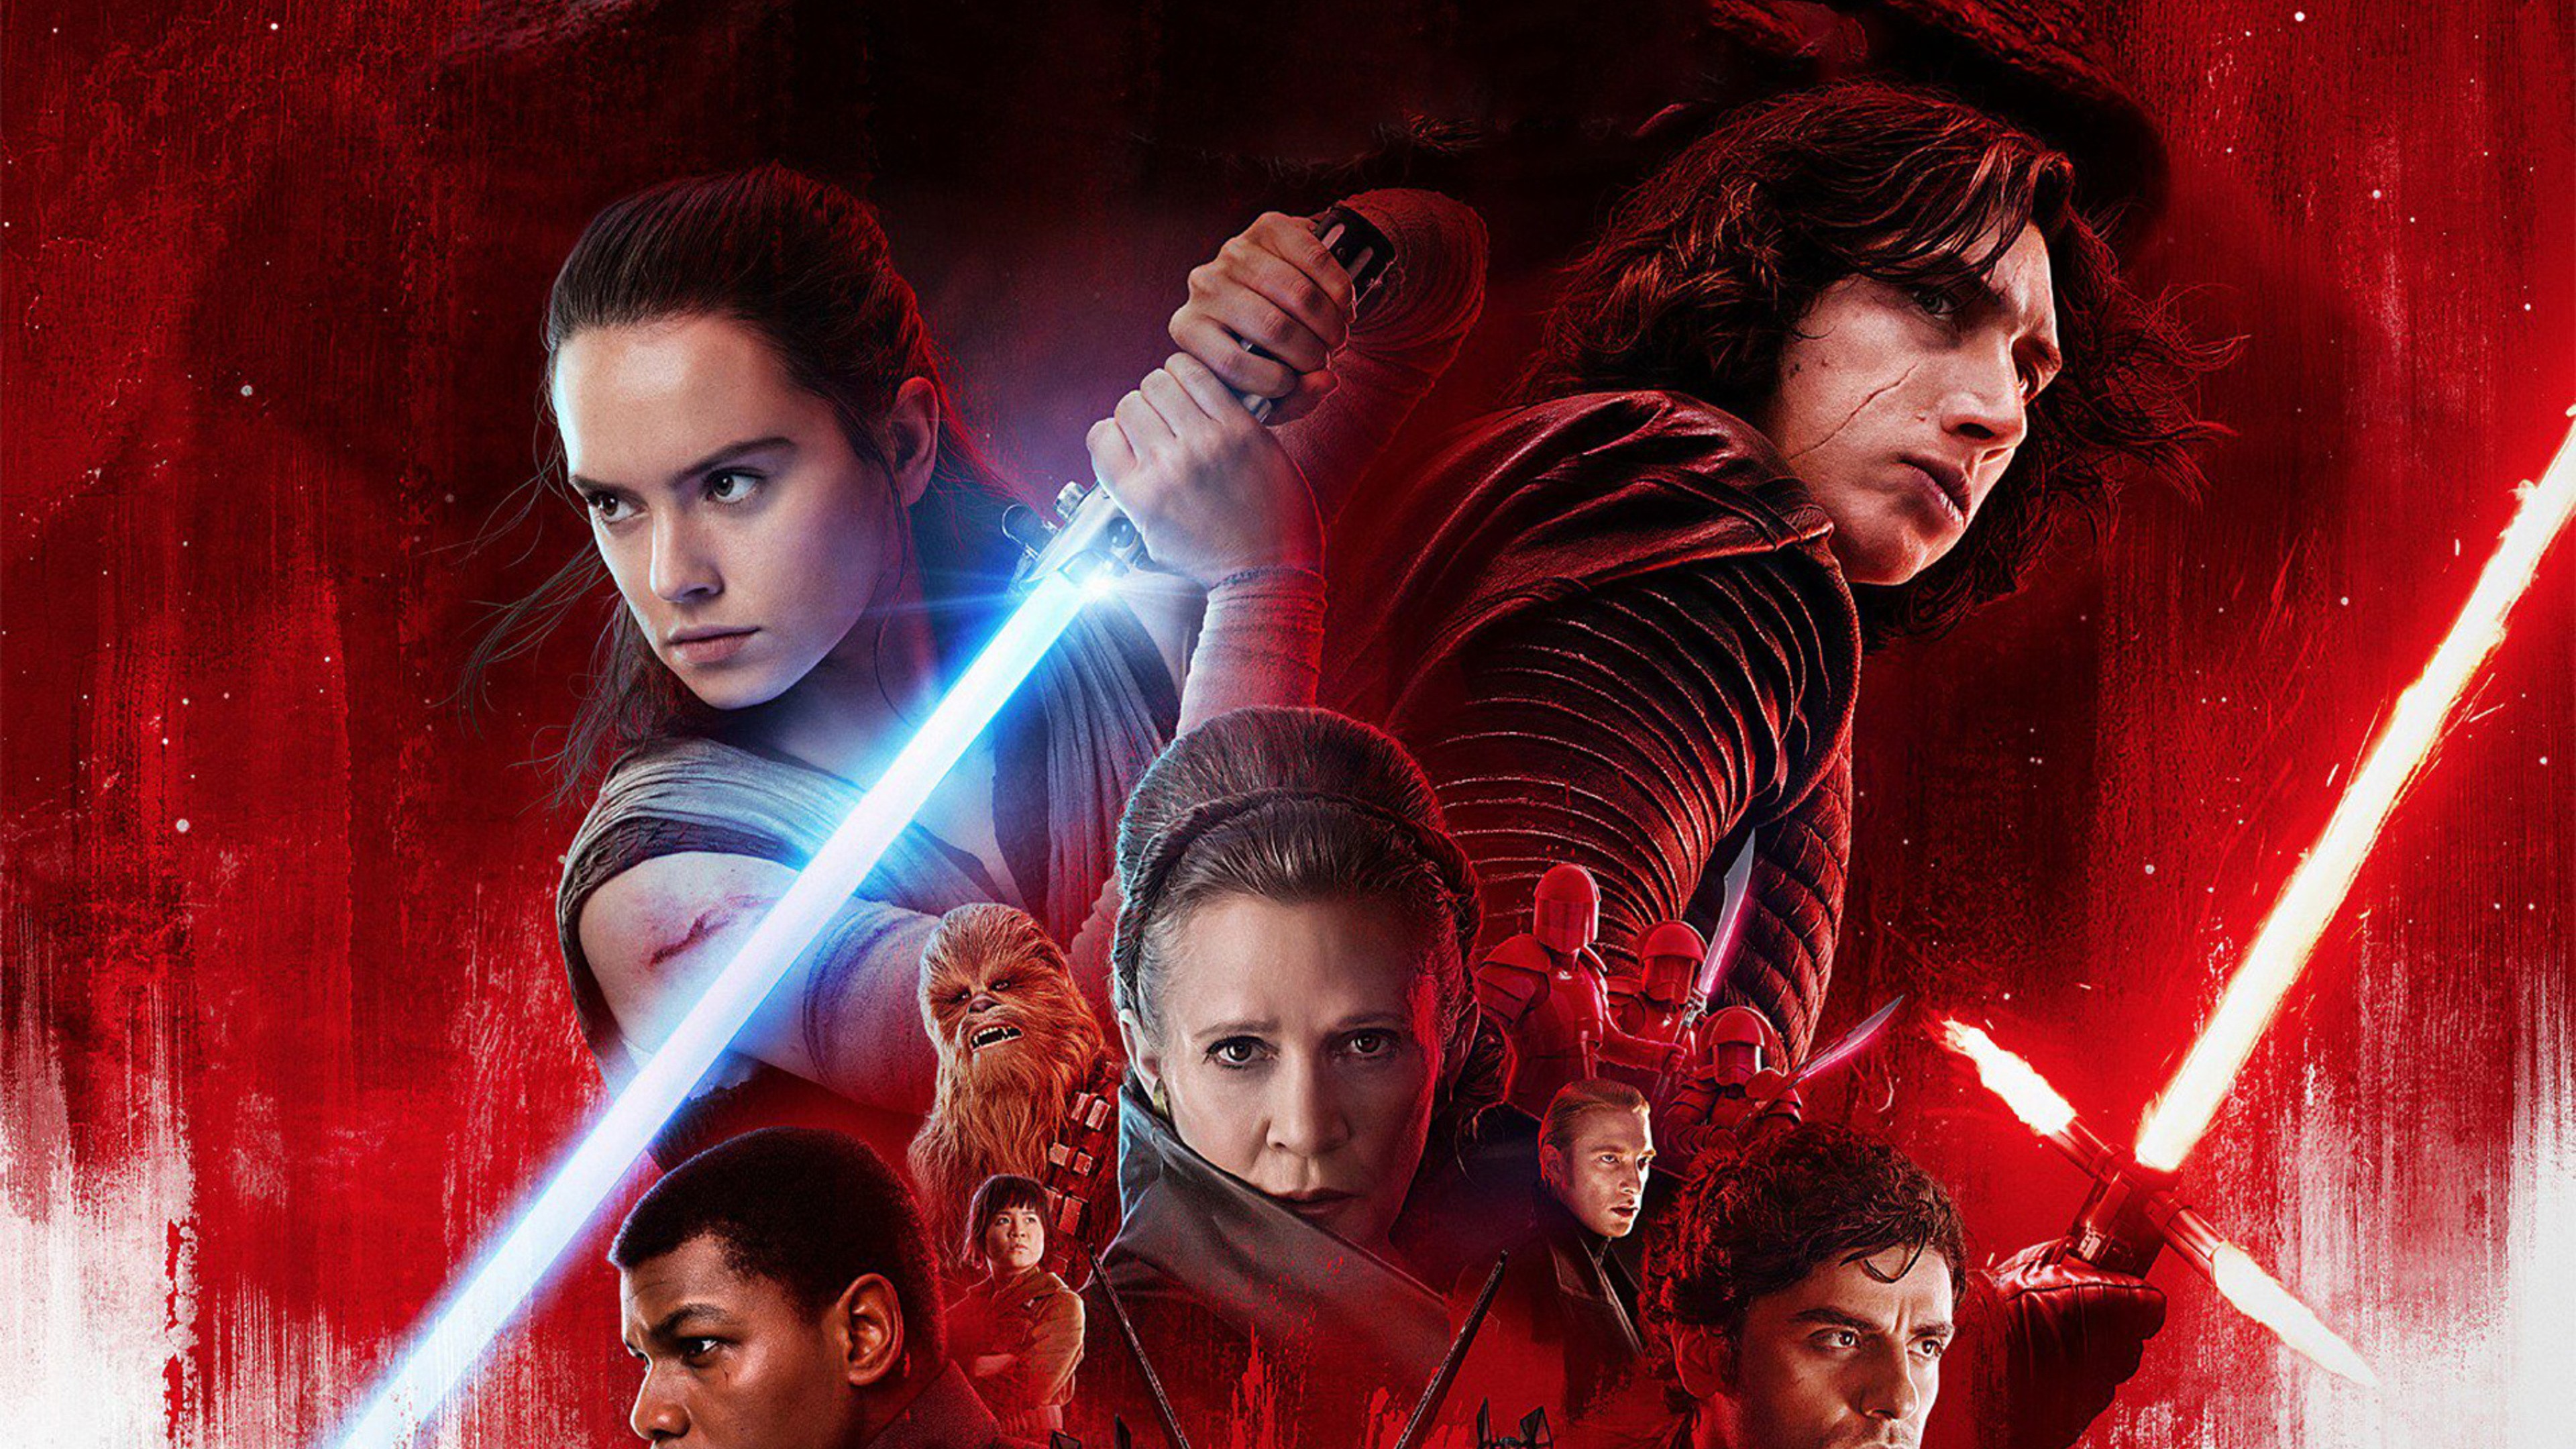 Star Wars The Last Jedi 16 9 - HD Wallpaper 